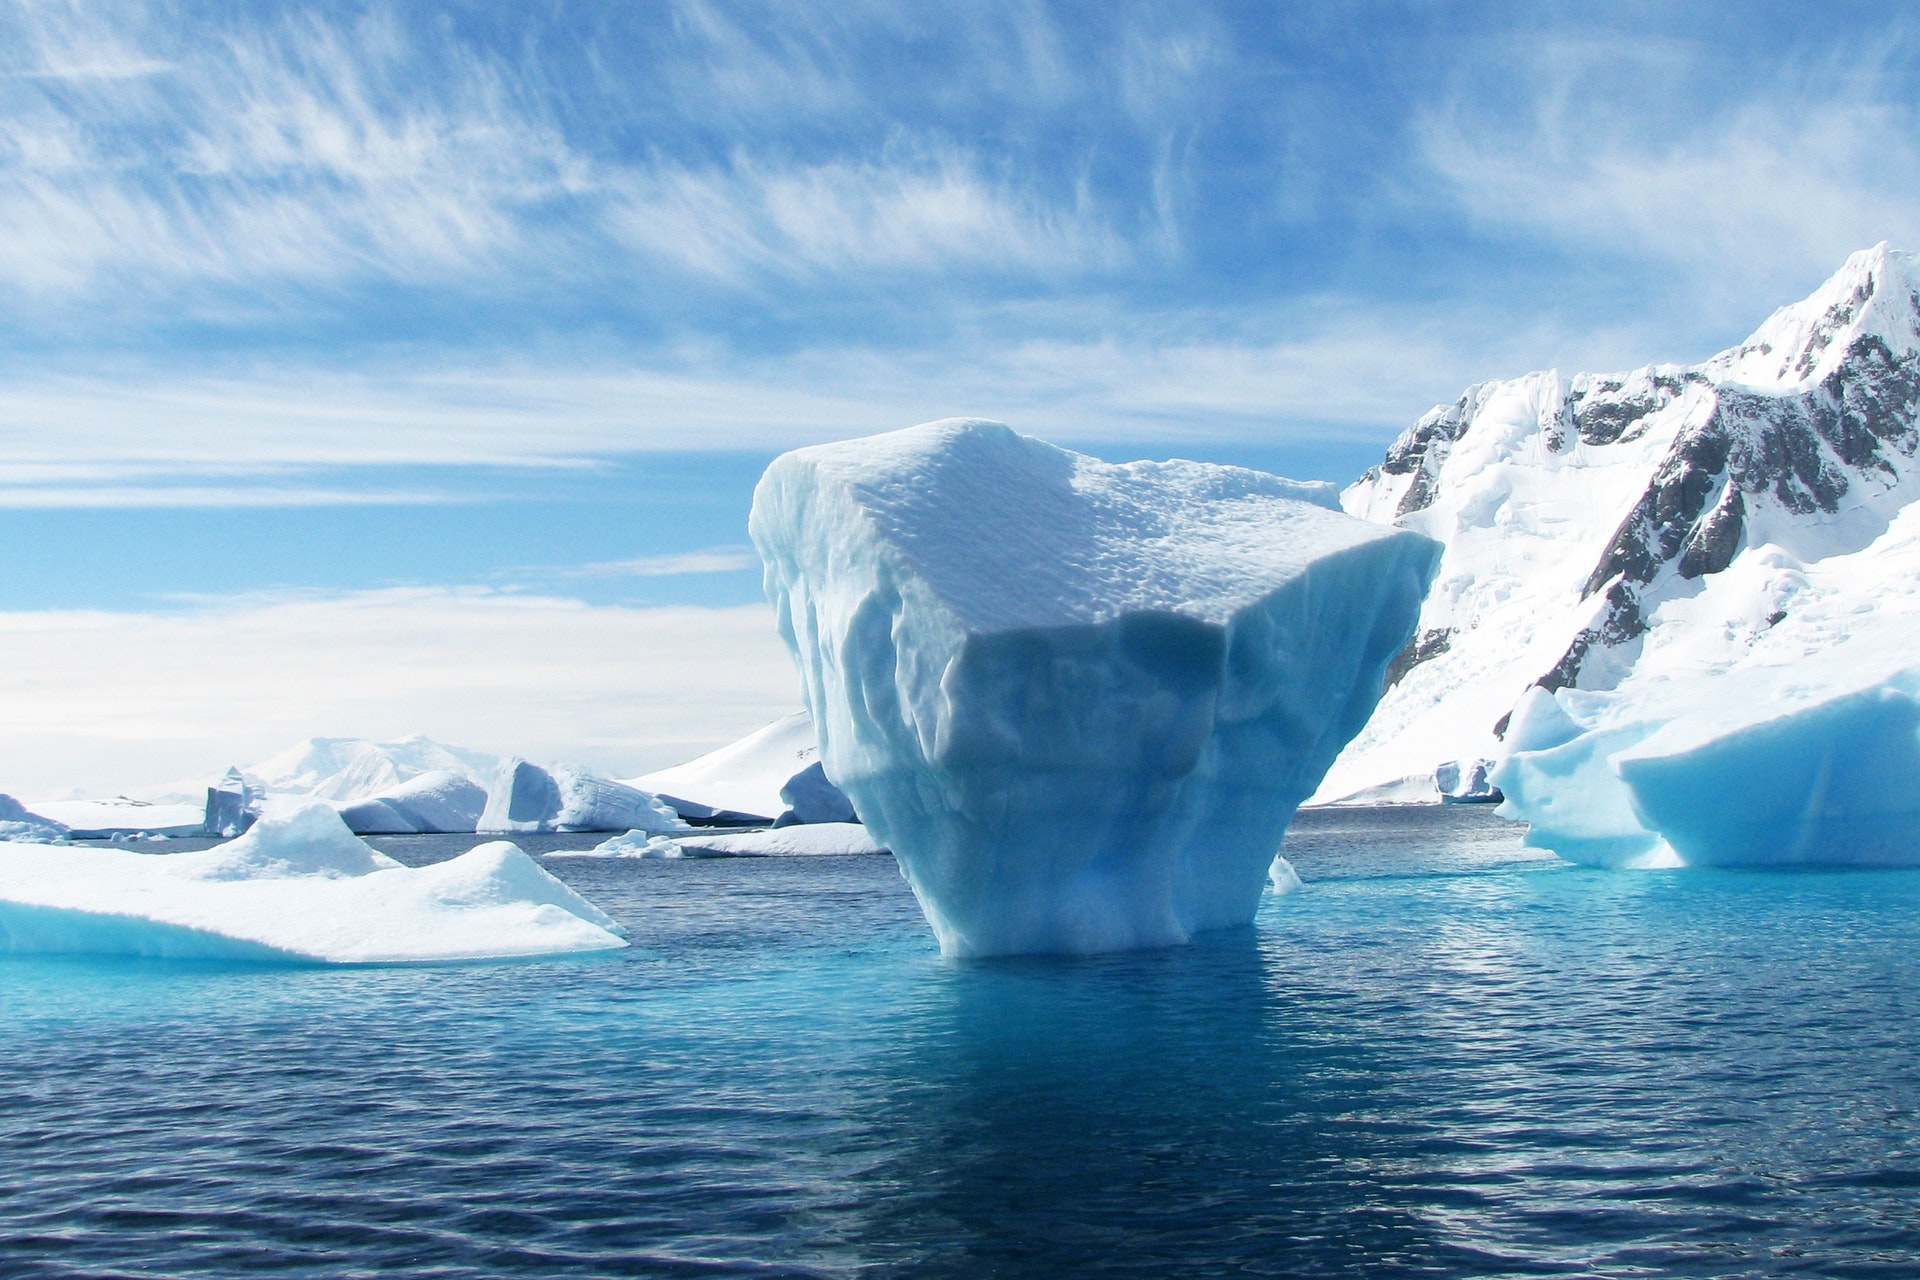 Iceberg landscape in Antarctica